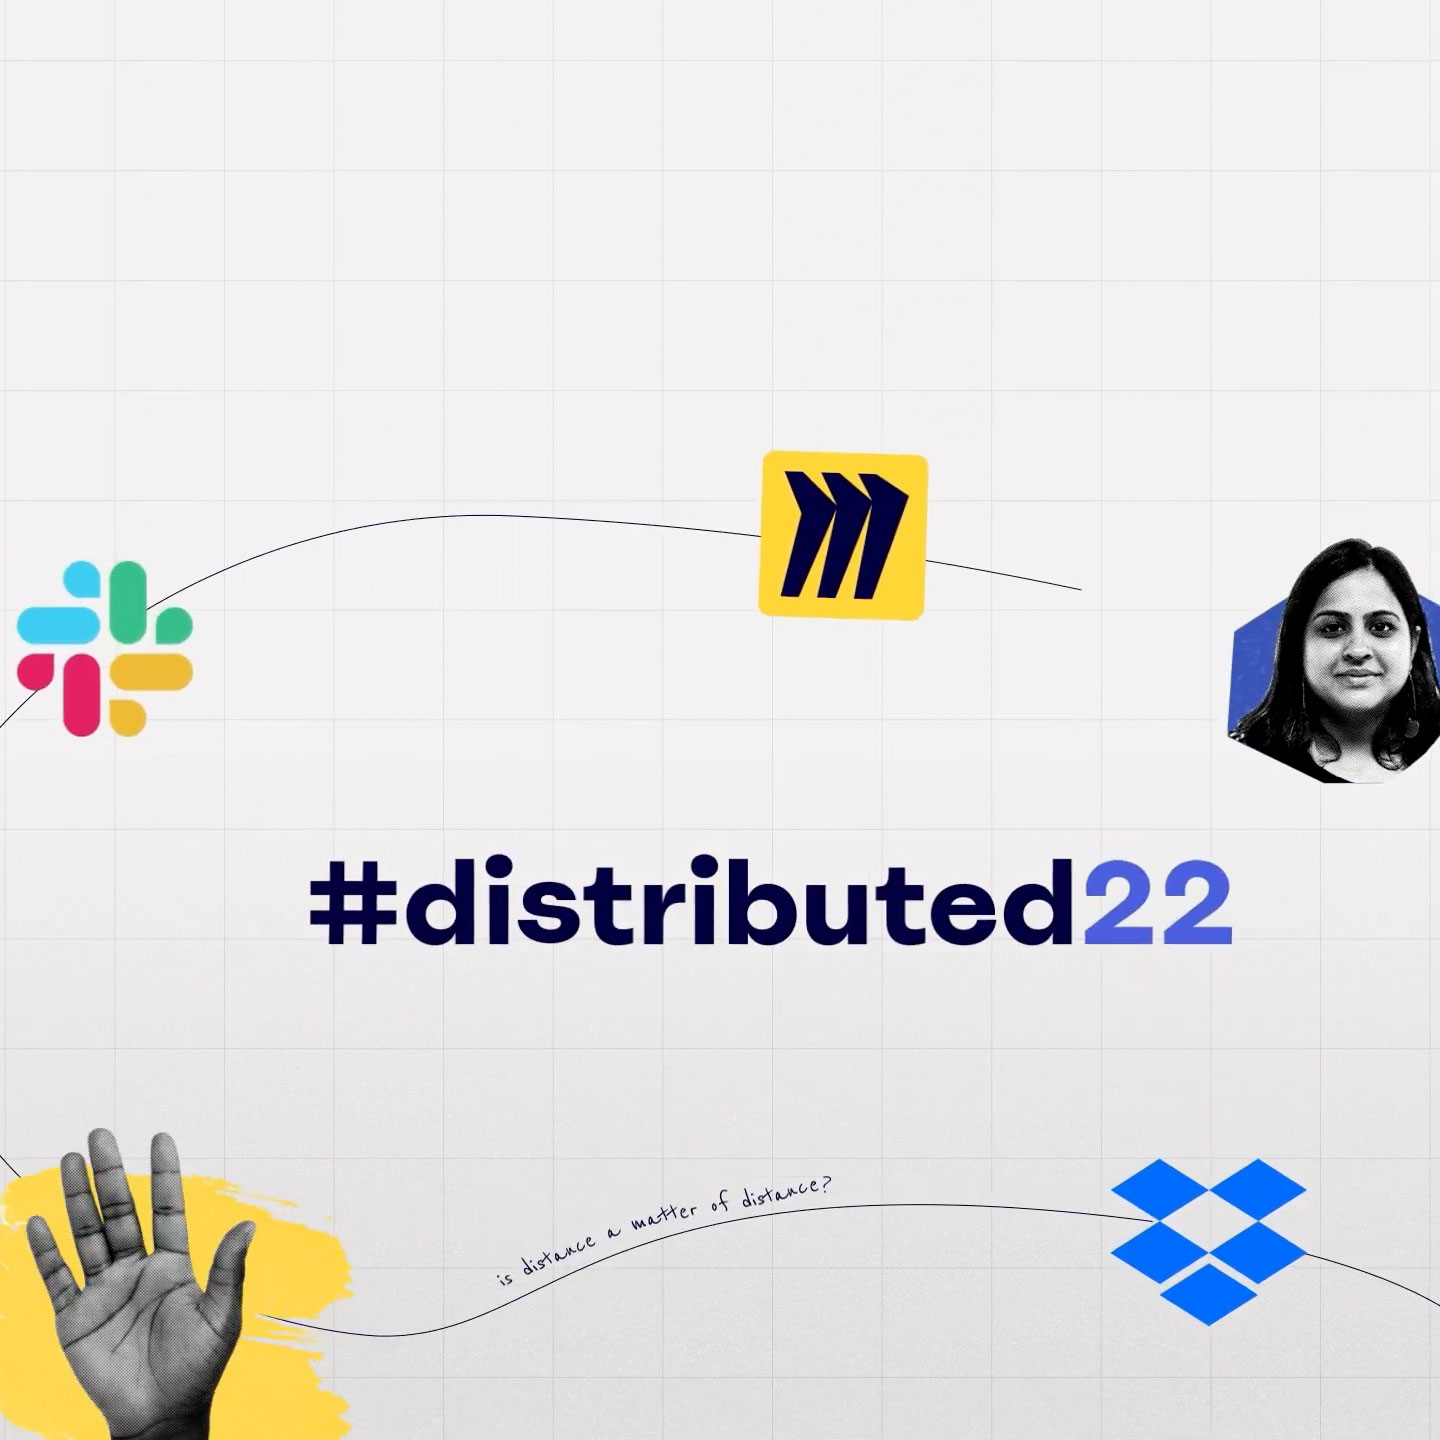 การ์ดหัวข้อจากกิจกรรม #distributed22 พร้อมโลโก้ของ Miro, Slack และ Dropbox